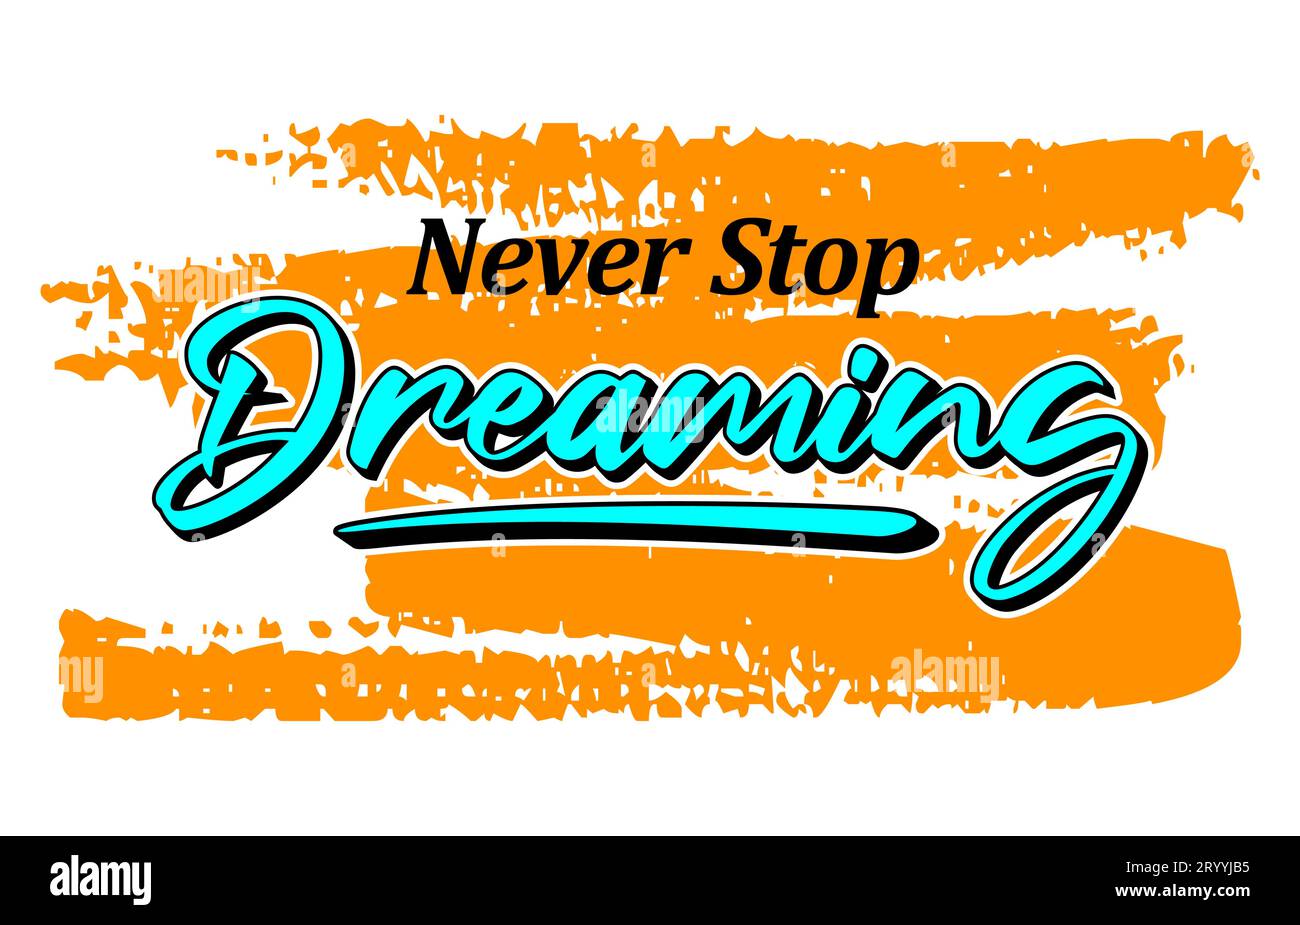 Ne jamais arrêter de rêver, courtes phrases de motivation dessin à la main, slogan t-shirt, affiches, étiquettes, etc Illustration de Vecteur